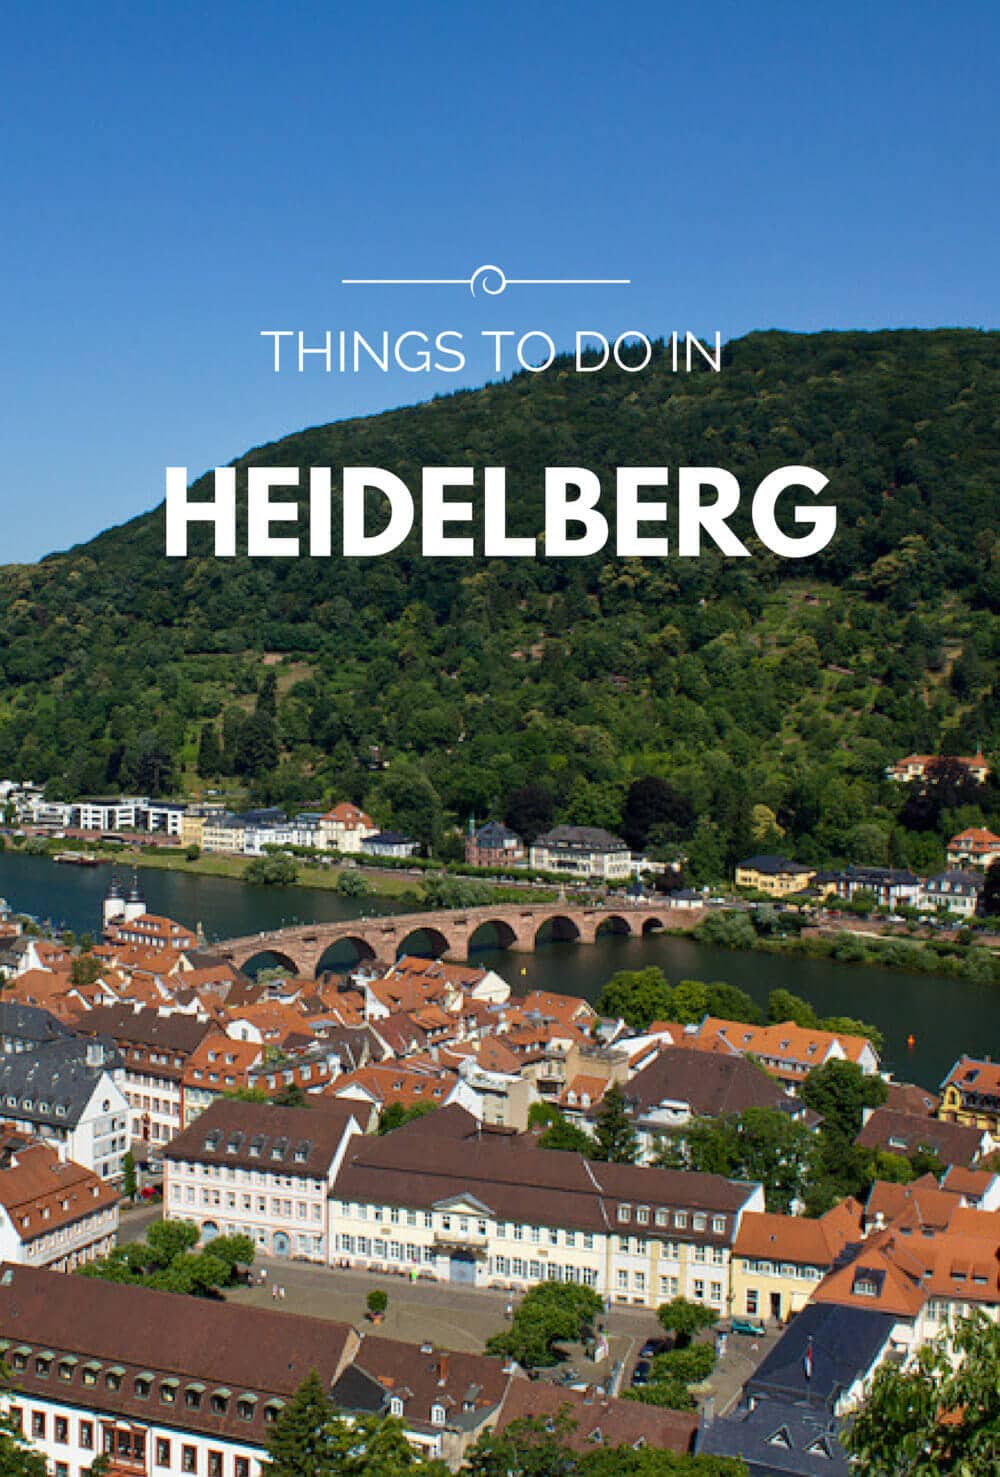 Things to do in Heidelberg, Germany